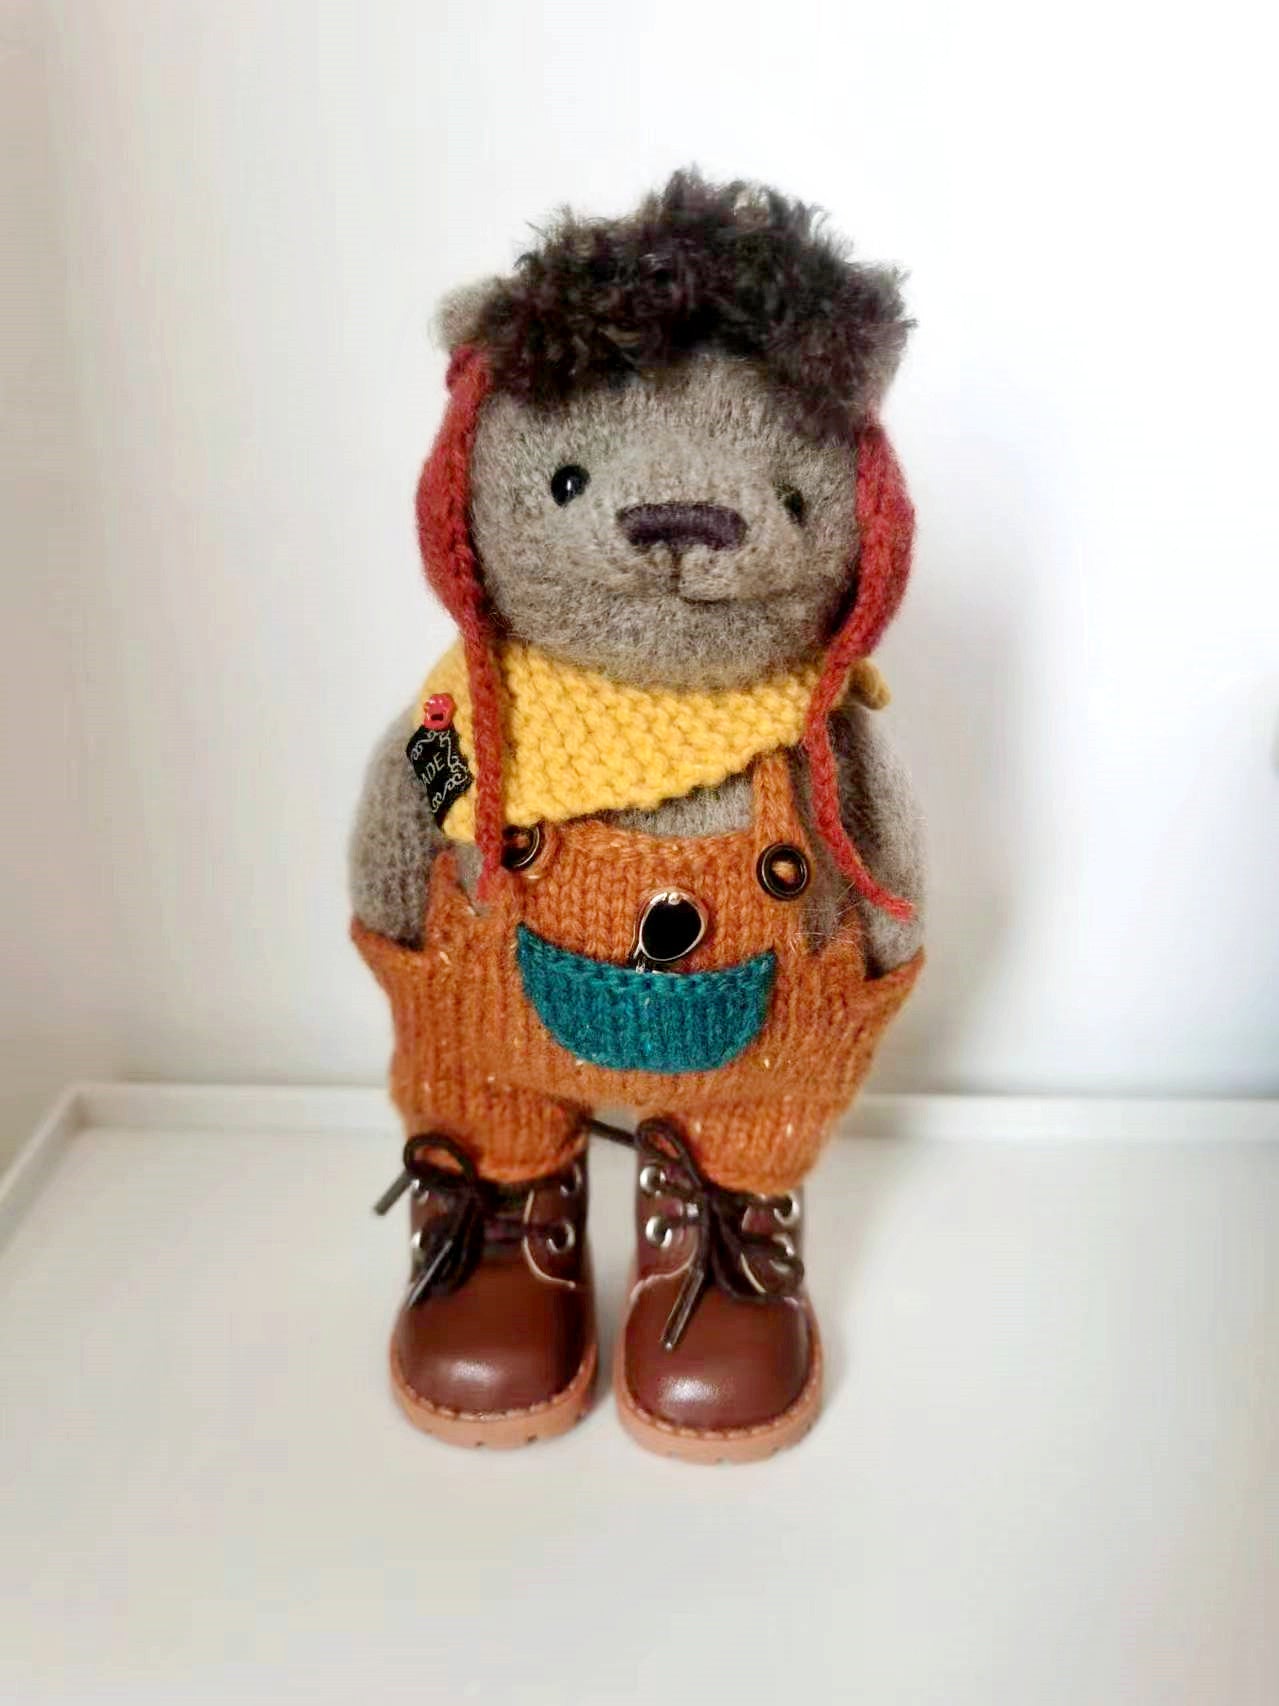 Small Handmade Crochet Teddy Bear Toy as Party Favor